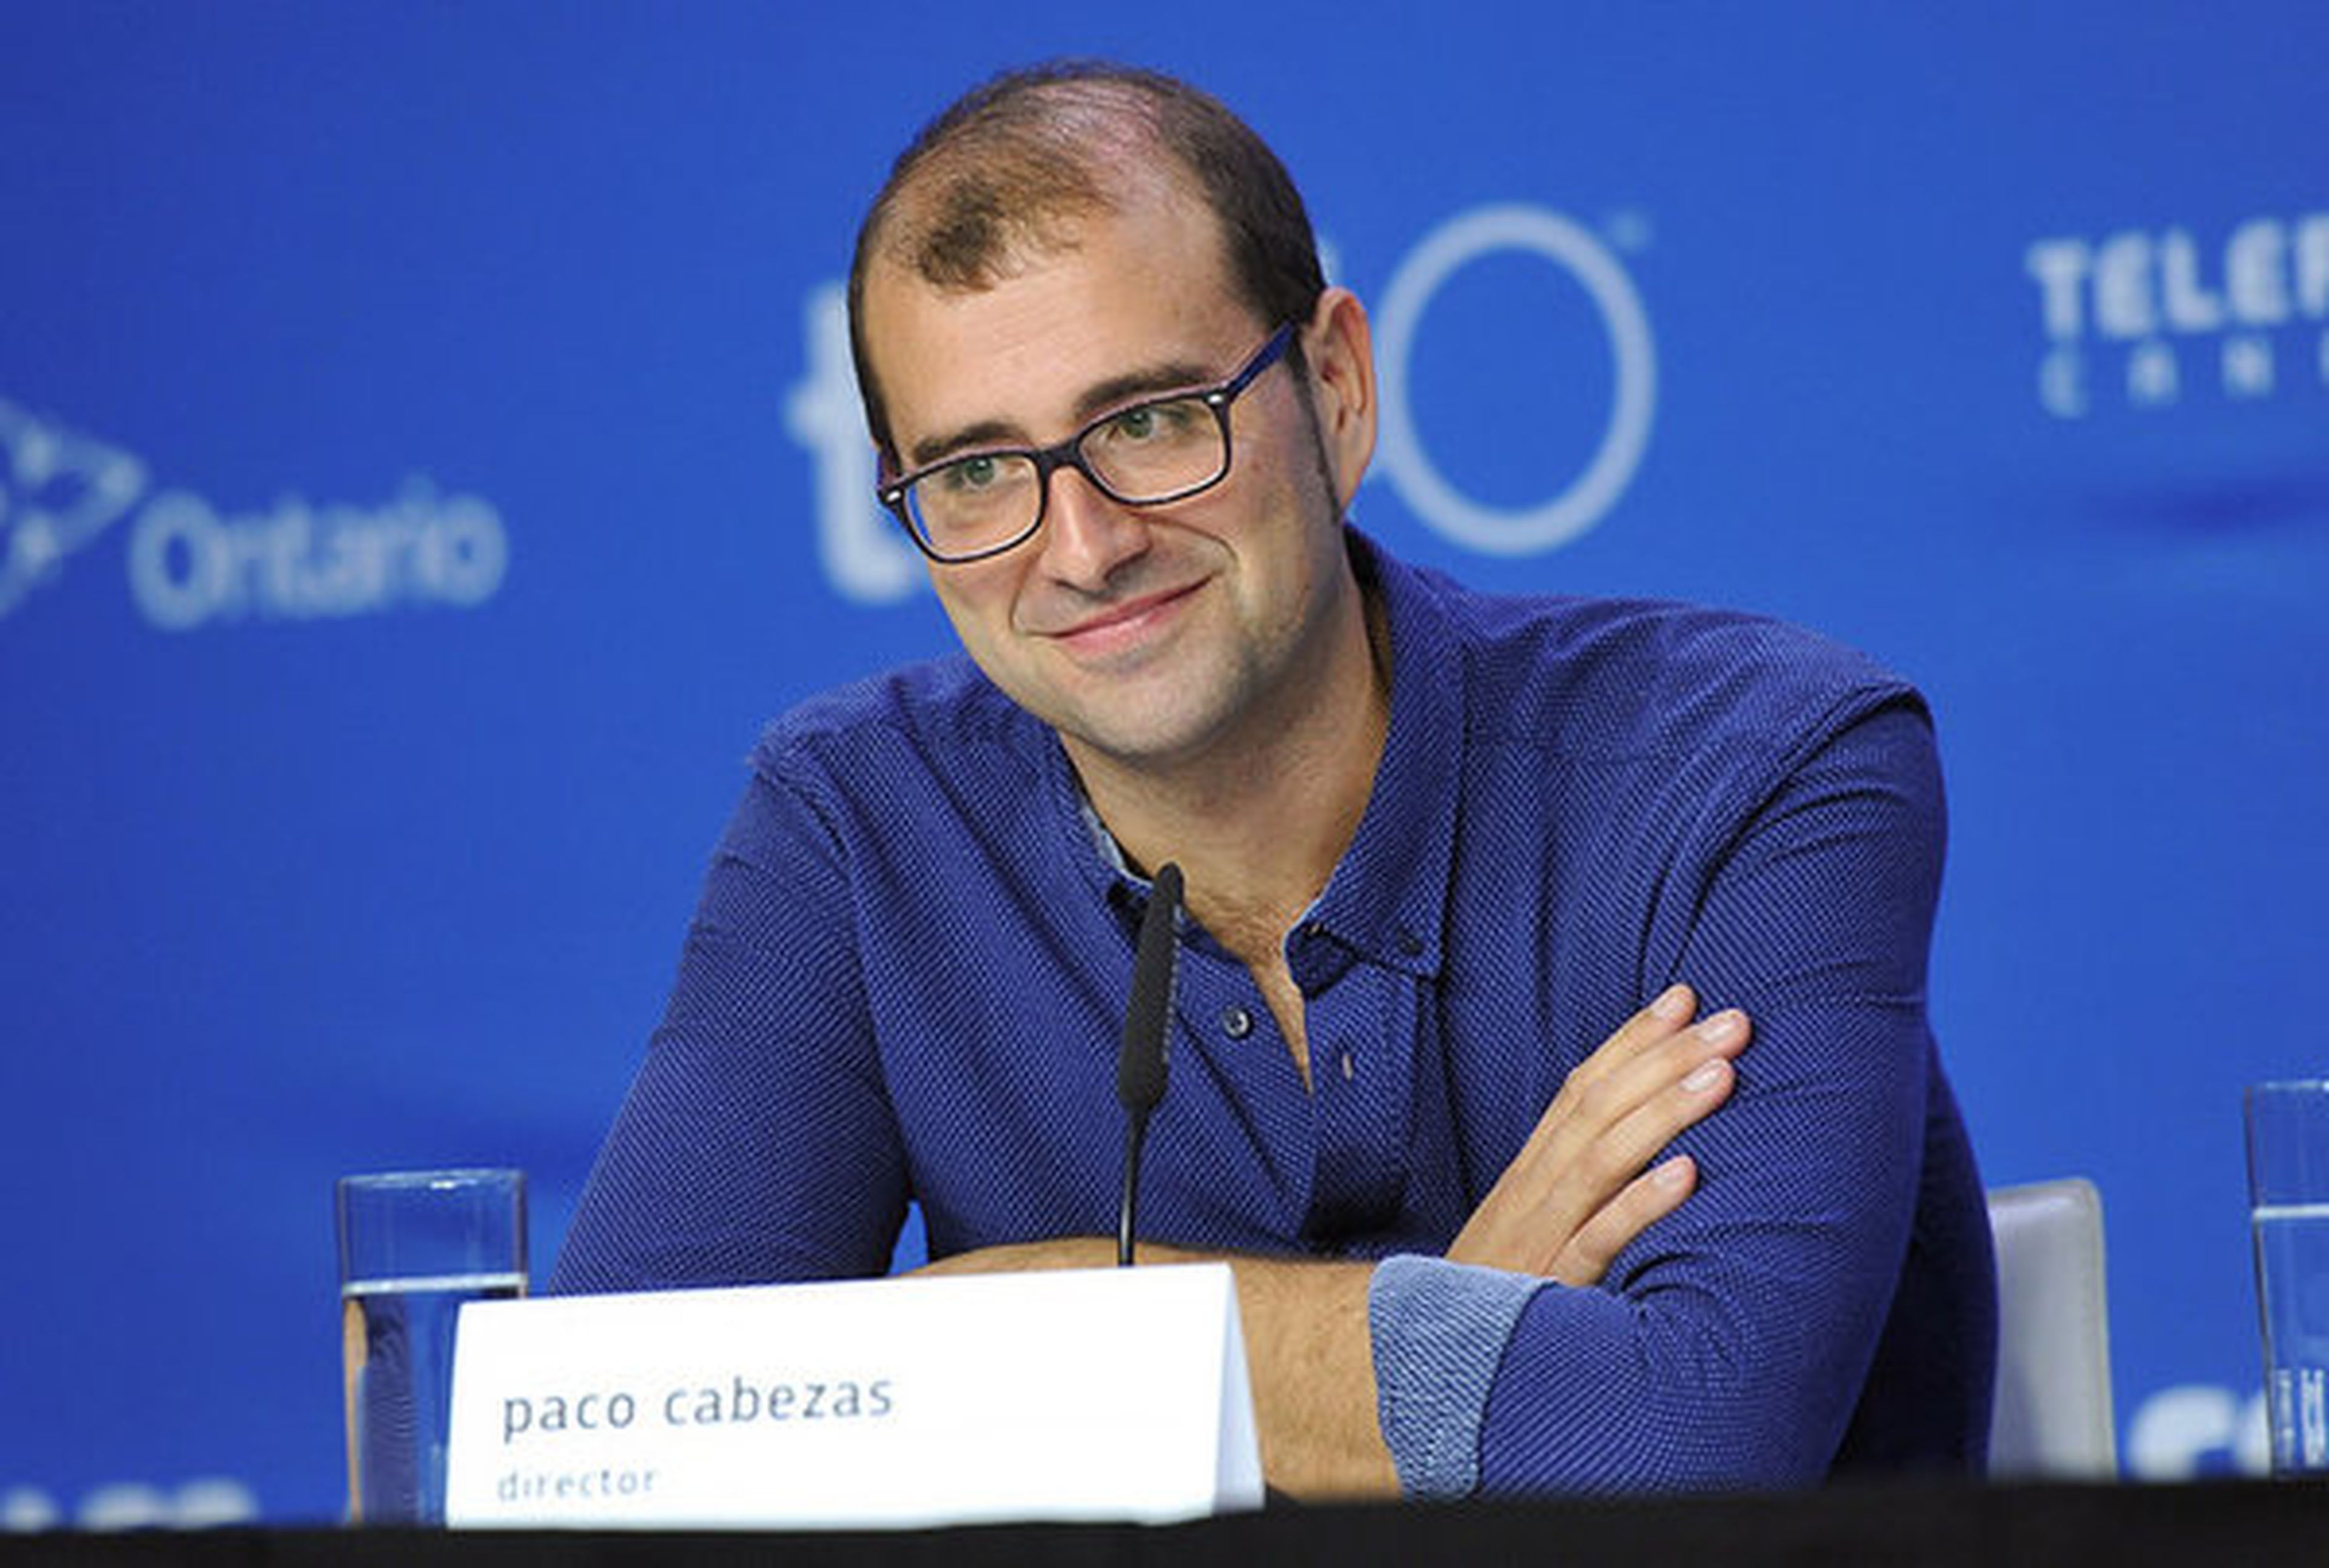 Paco Cabezas